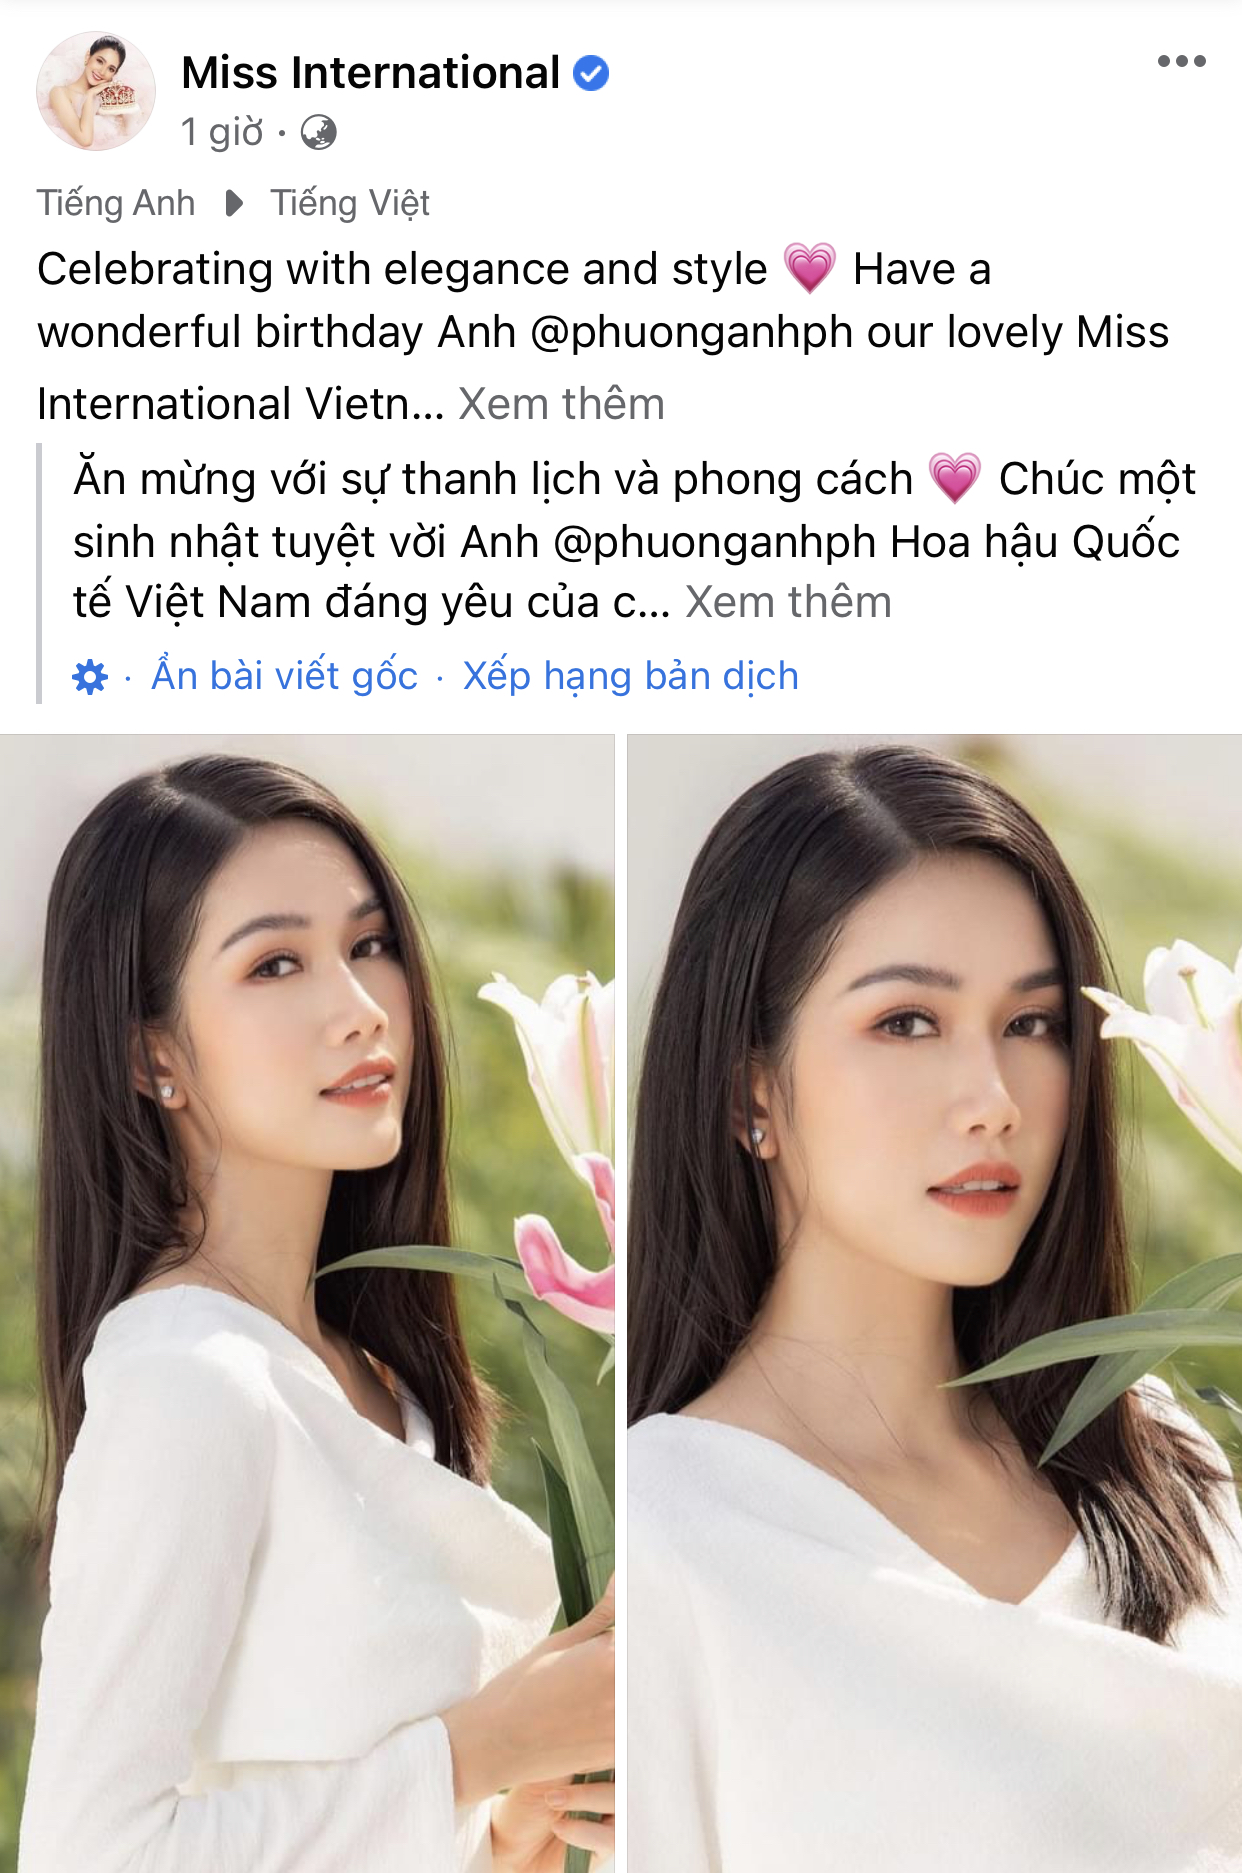 Miss International có hẳn bài đăng riêng chúc mừng sinh nhật cũng như dành tặng Á hậu Phương Anh nhiều lời khen 'có cánh'